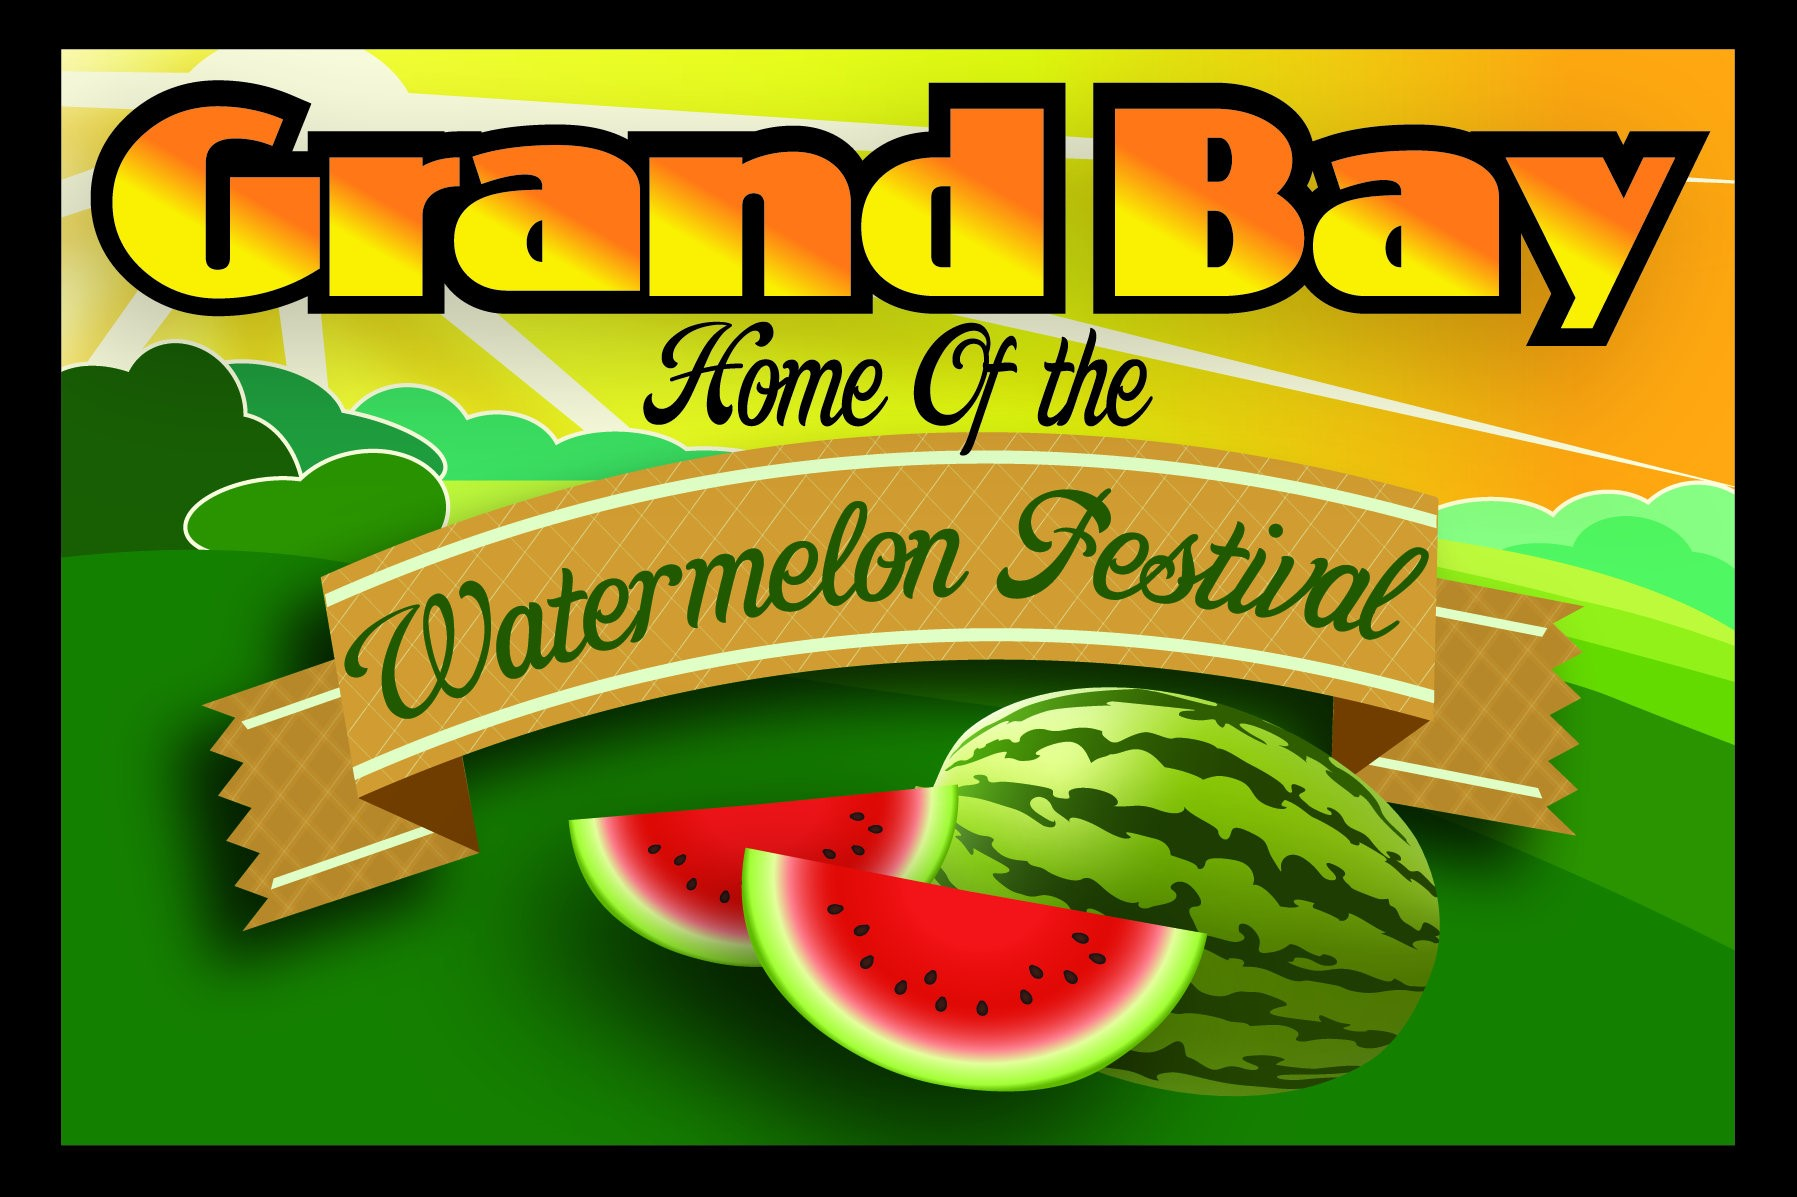 49th Annual Grand Bay Watermelon Festival